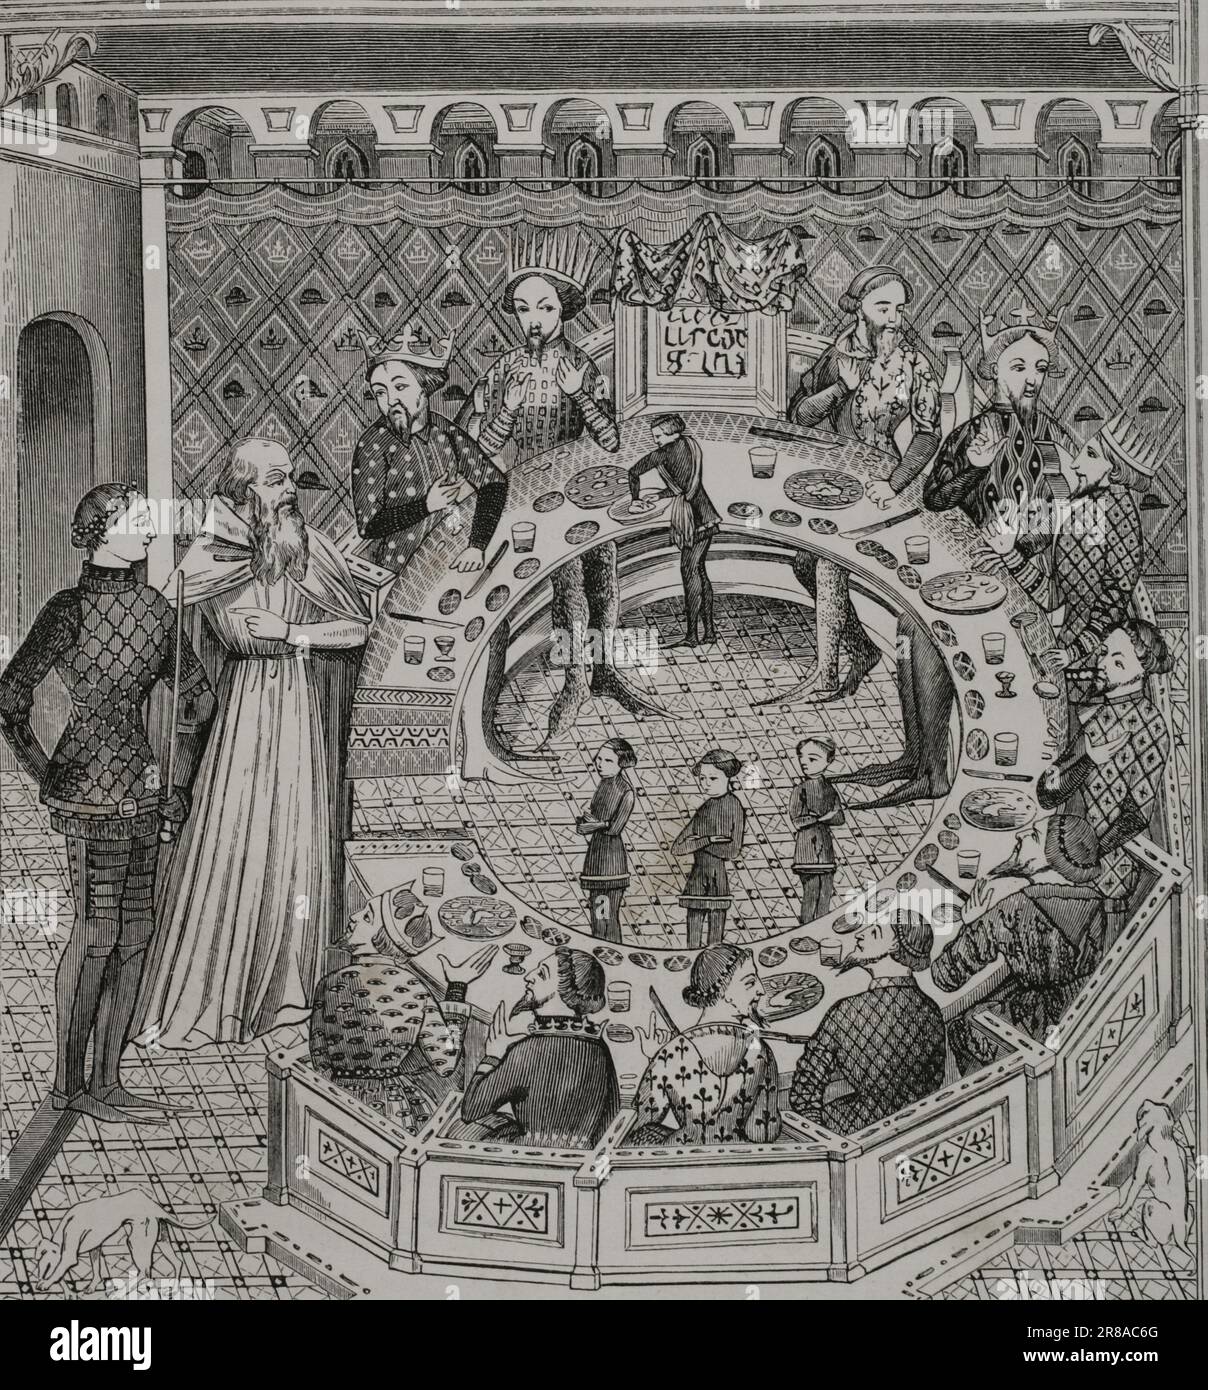 King Arthur’s Round Table. Engraving from a 14th-century miniature. 'Les Arts au Moyen Age et a l'Epoque de la Renaissance', by Paul Lacroix. Paris, 1877. Stock Photo